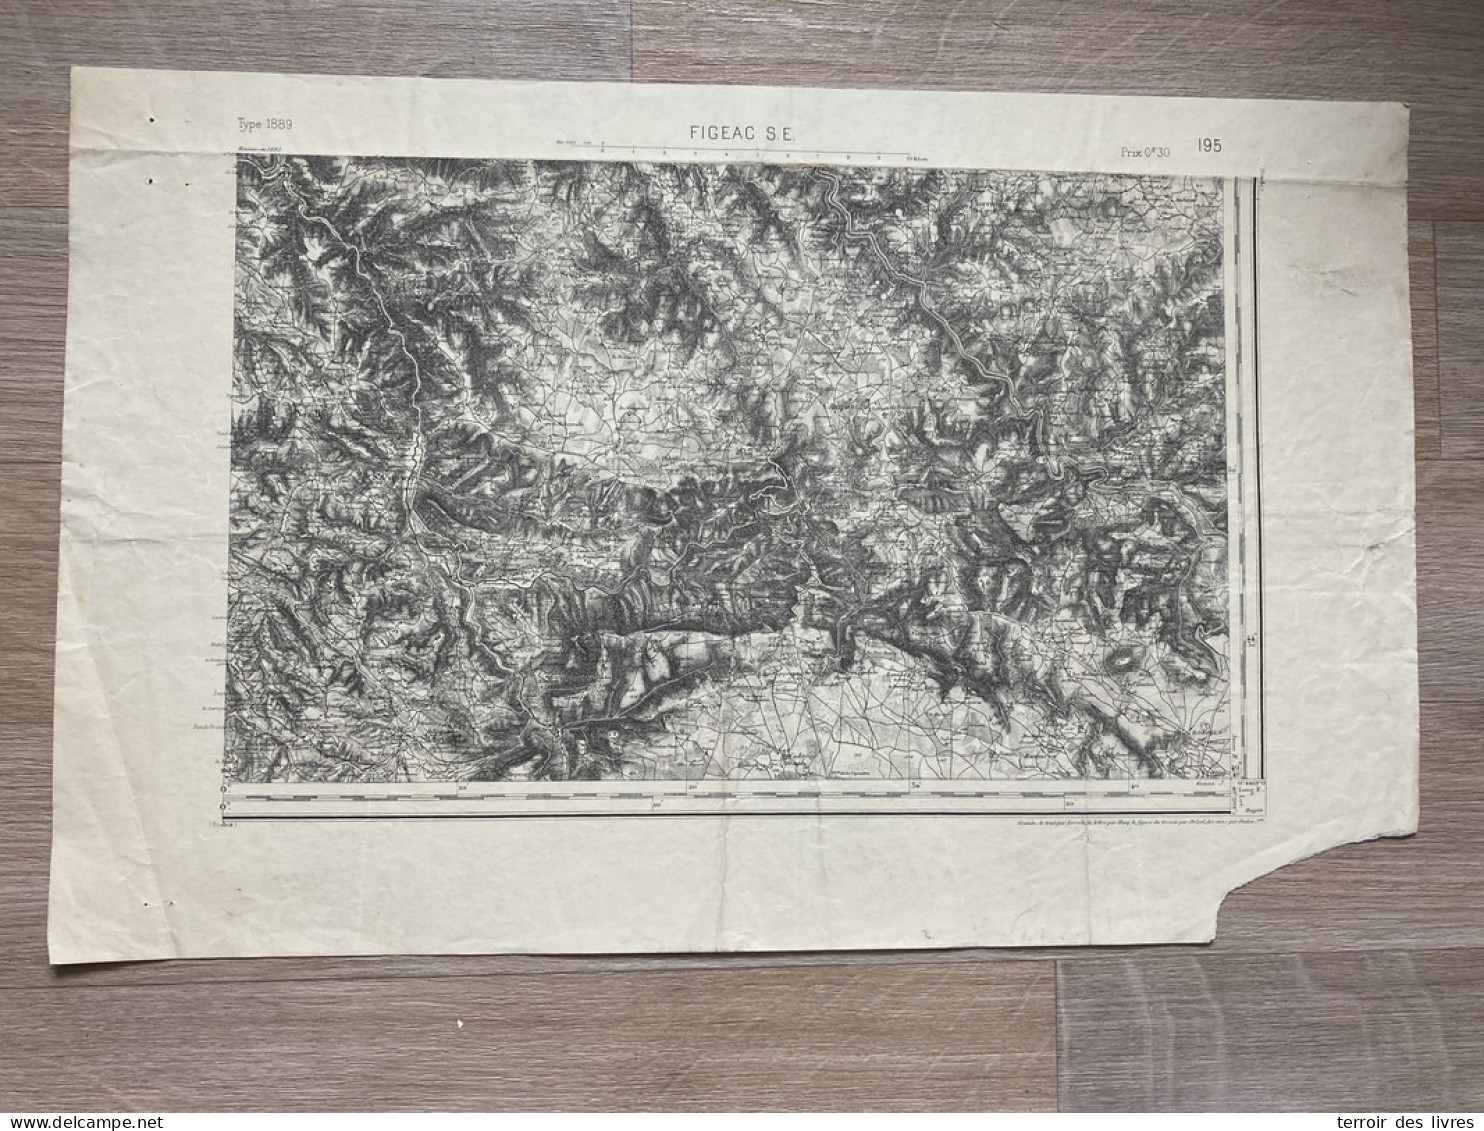 Carte état Major FIGEAC S.E. 1892 35x54cm SAINT FELIX DE LUNEL VILLECOMTAL CAMPUAC PRUINES MOURET GOLINHAC ESPEYRAC SENE - Cartes Géographiques